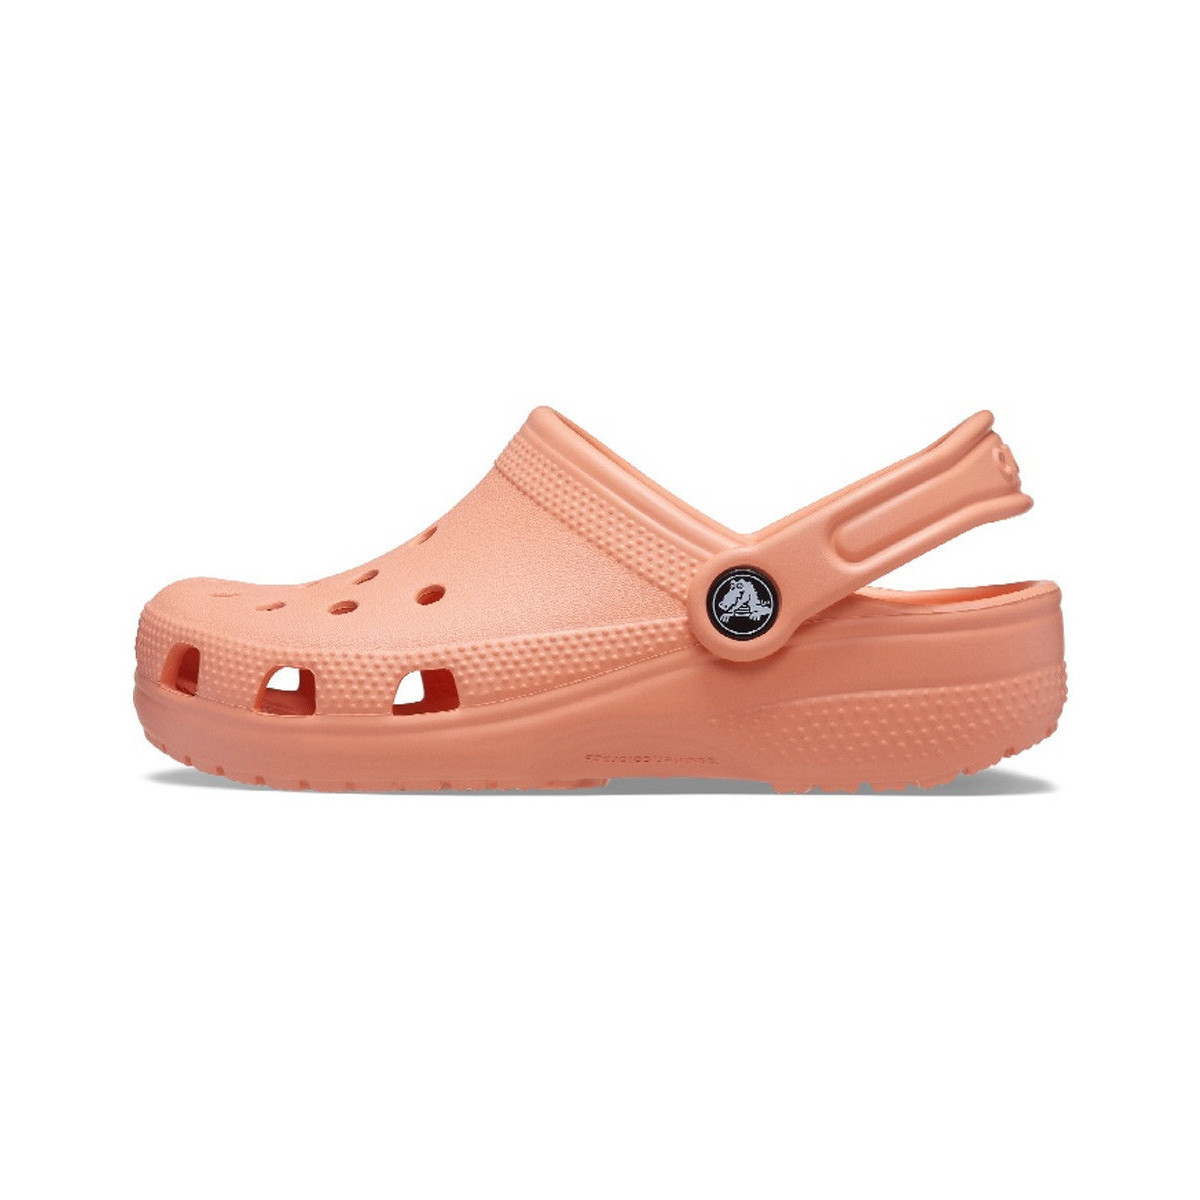 Chaussures Enfant Mules Crocs Sabot  CLASSIC Enfant Orange